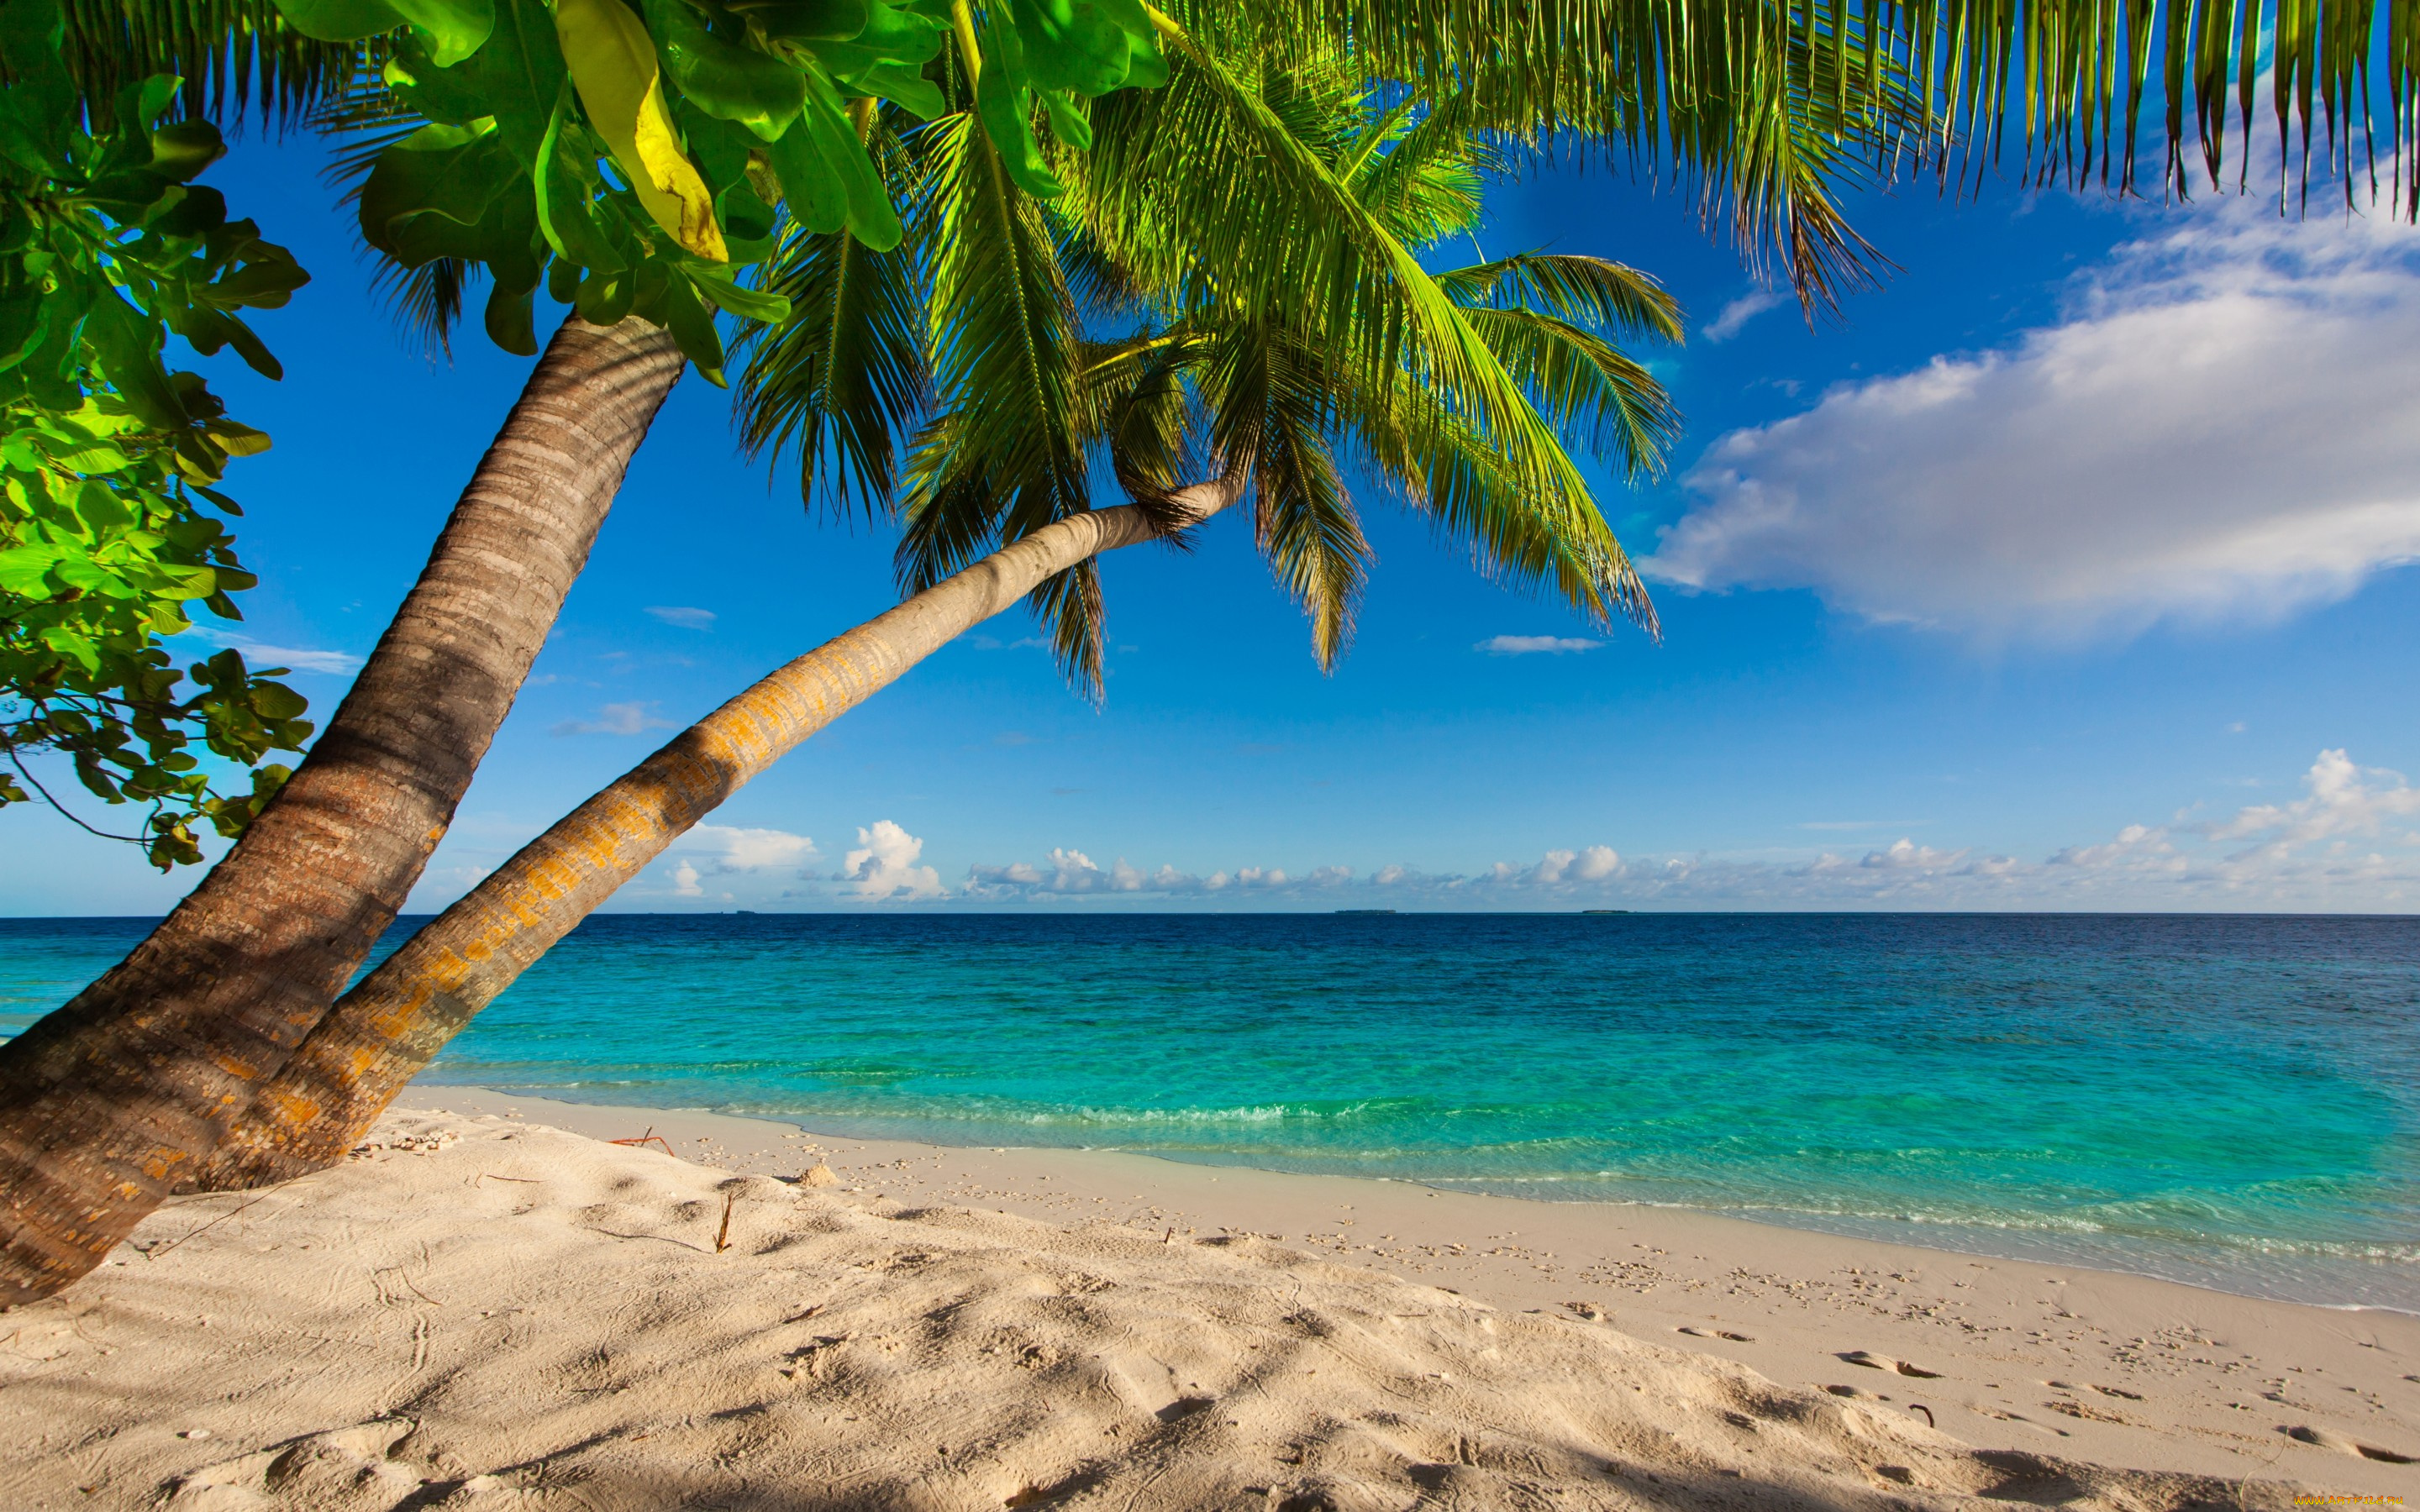 природа, тропики, shore, sea, palms, summer, sand, tropical, paradise, beach, пальмы, песок, берег, море, пляж